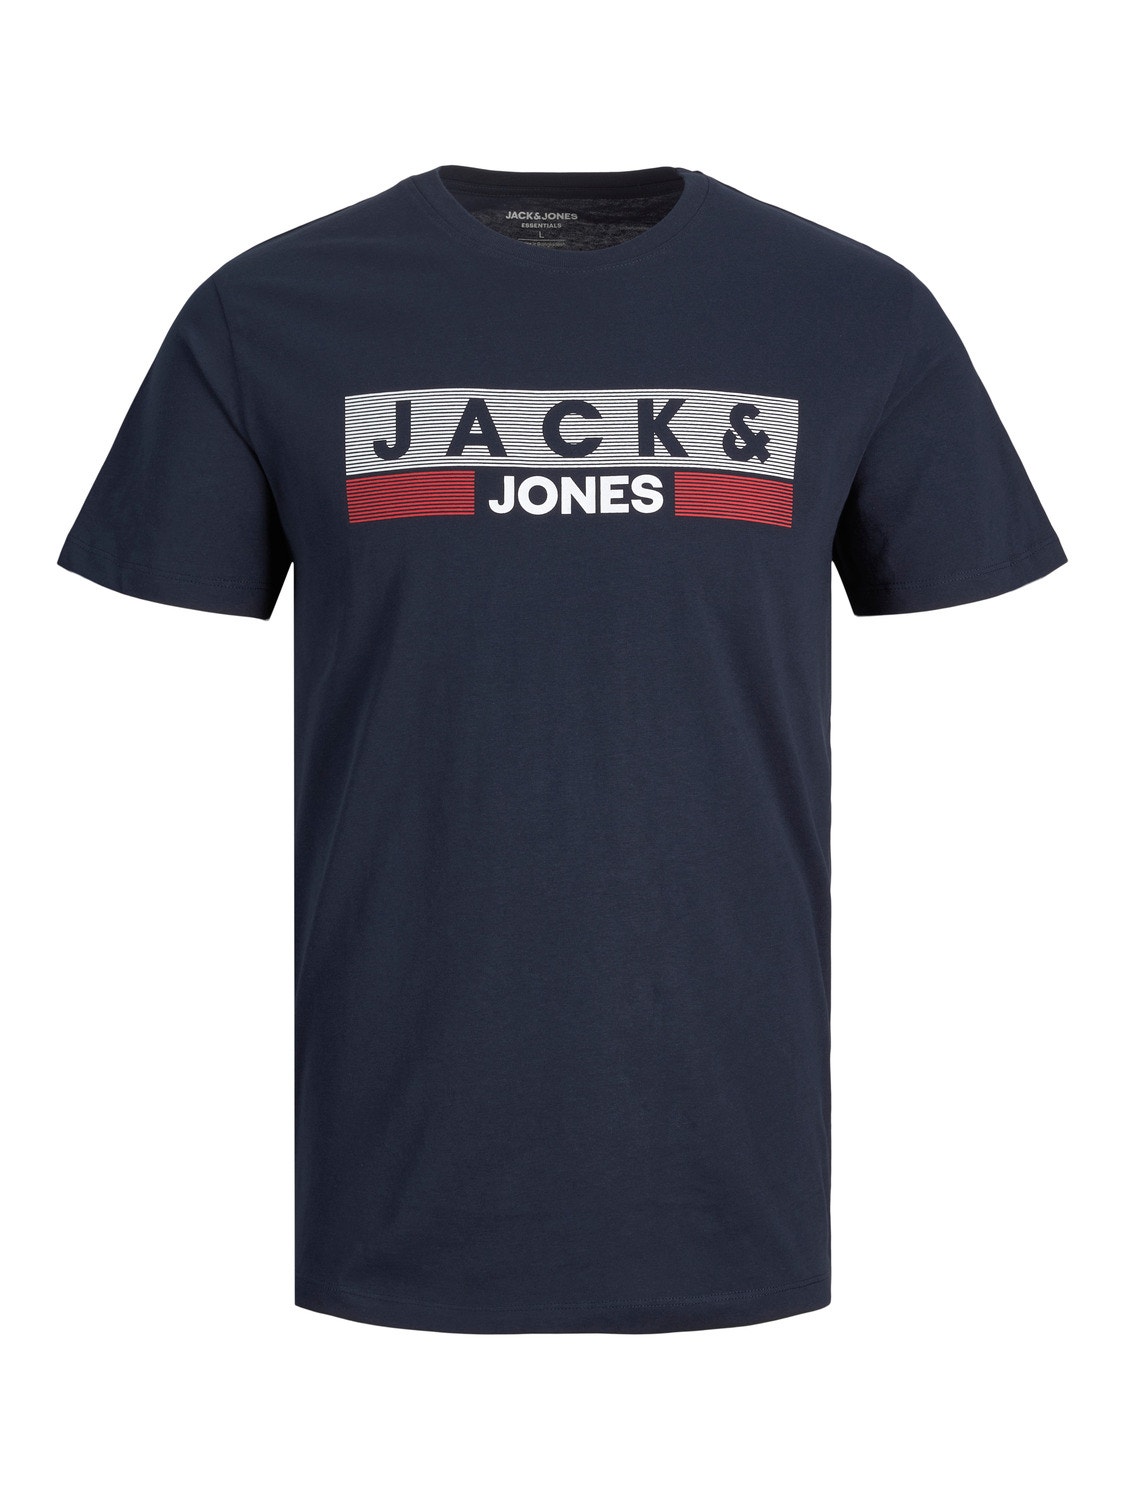 Jack & Jones Plus Size Z logo T-shirt -Navy Blazer - 12158505